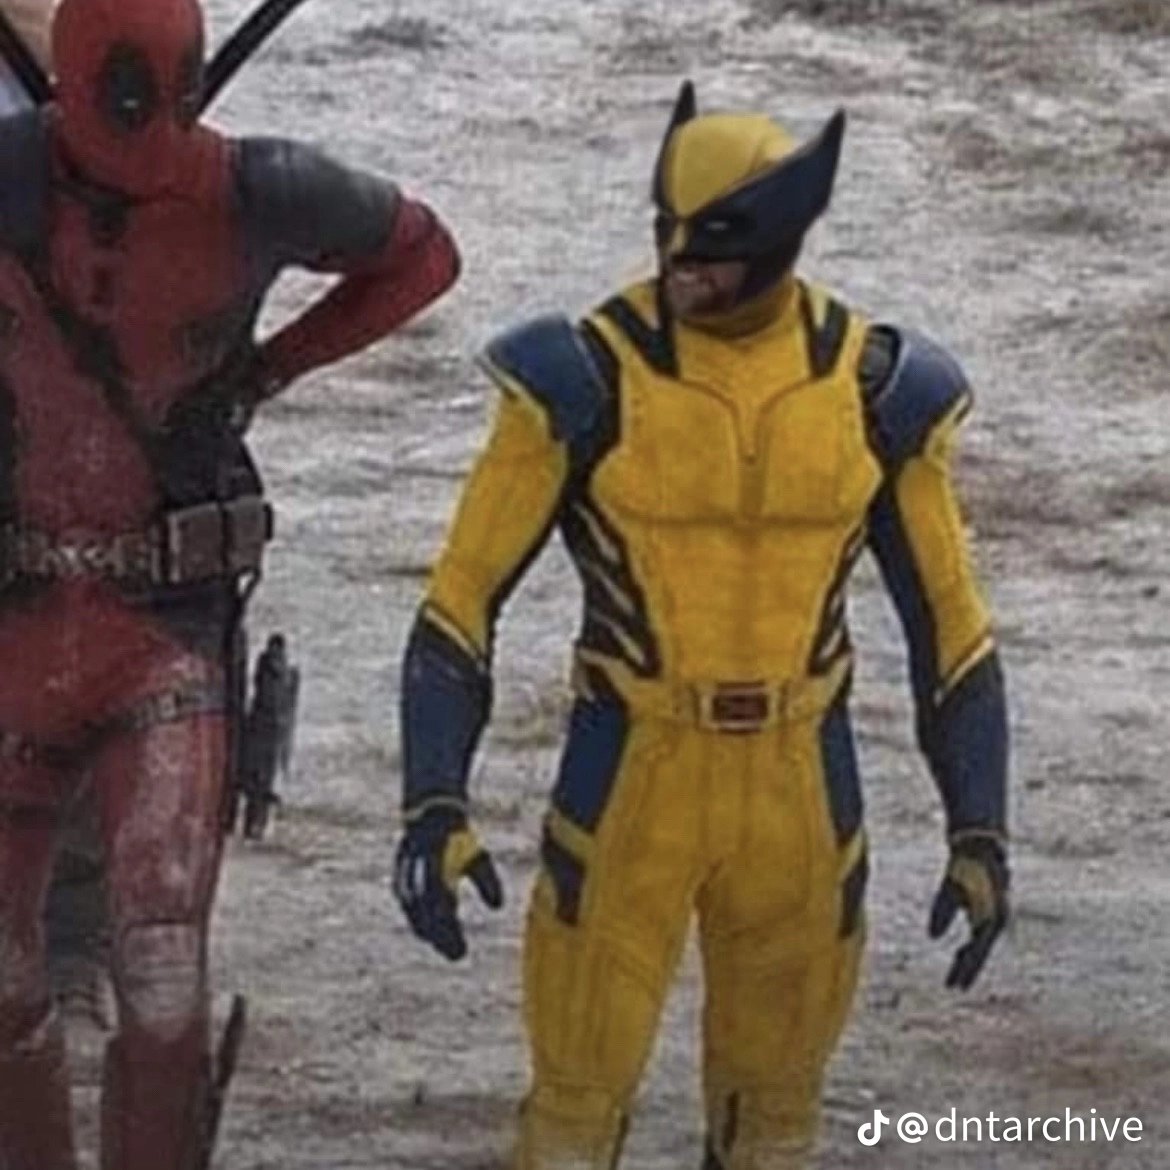 WOLVERINE 🔥 Tenemos este edit del #Wolverine de Hugh Jackmam filtrado del set de grabaciones de #Deadpool3 y la verdad que el caso está muy bien editado. Sería CINE si es así y por fín ver al Wolverine de Hugh con su casco 🚬